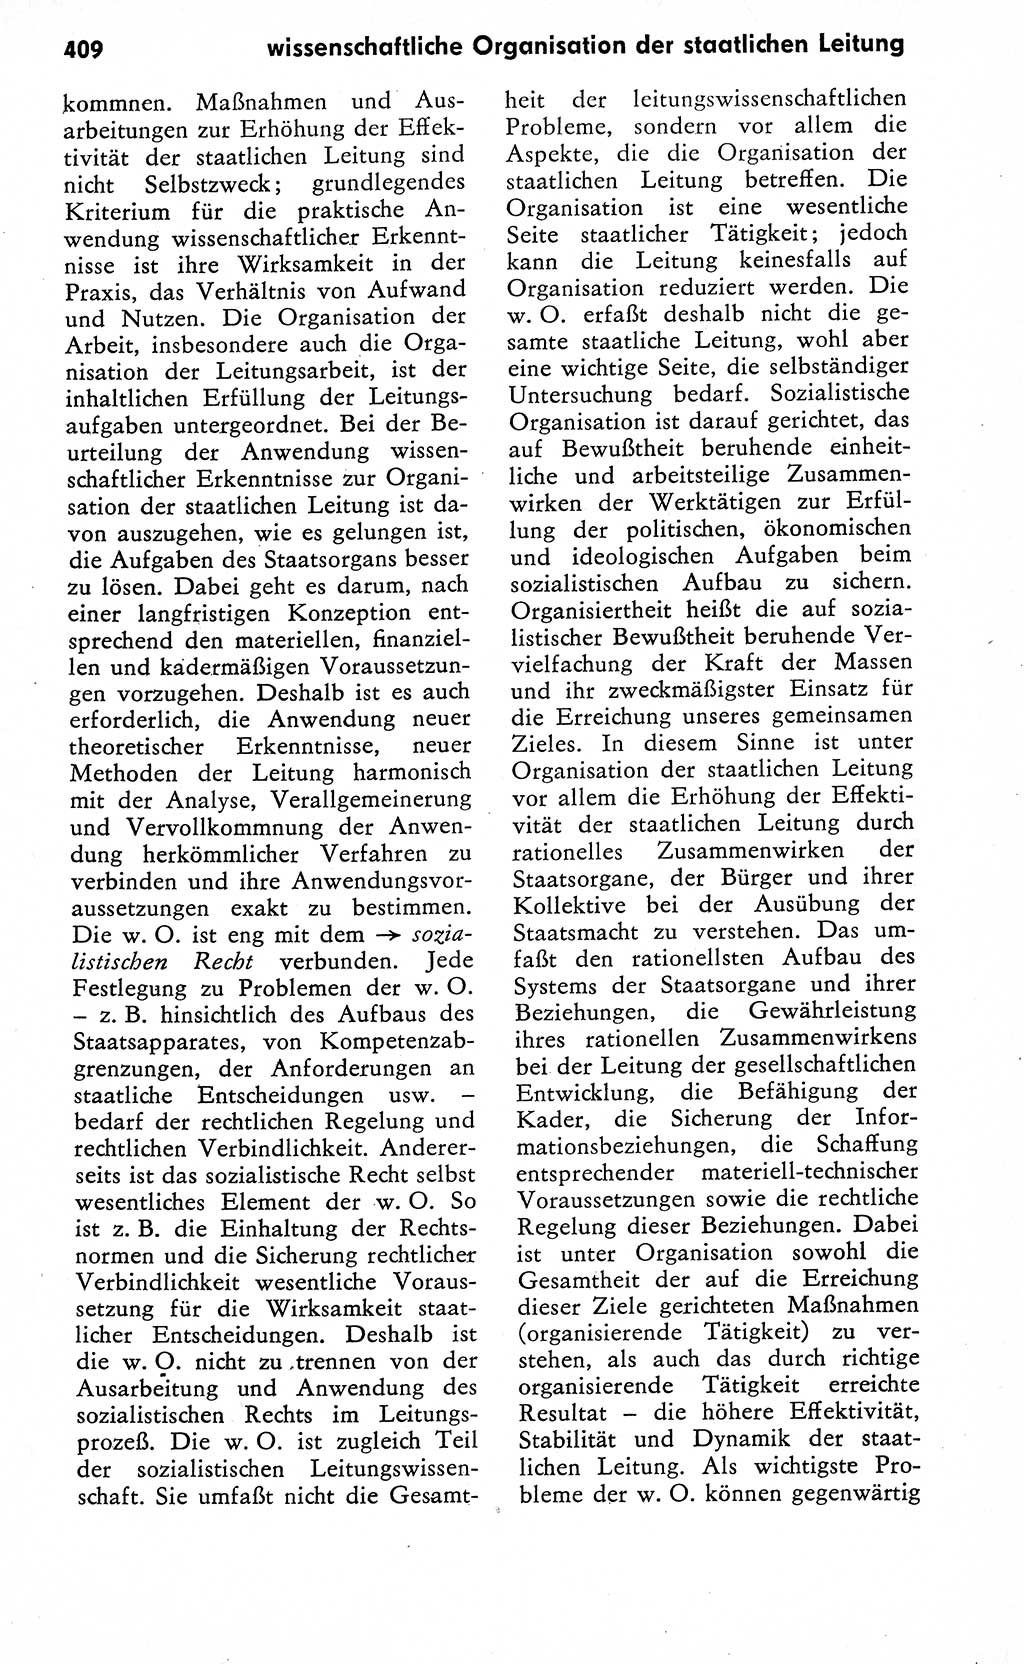 Wörterbuch zum sozialistischen Staat [Deutsche Demokratische Republik (DDR)] 1974, Seite 409 (Wb. soz. St. DDR 1974, S. 409)